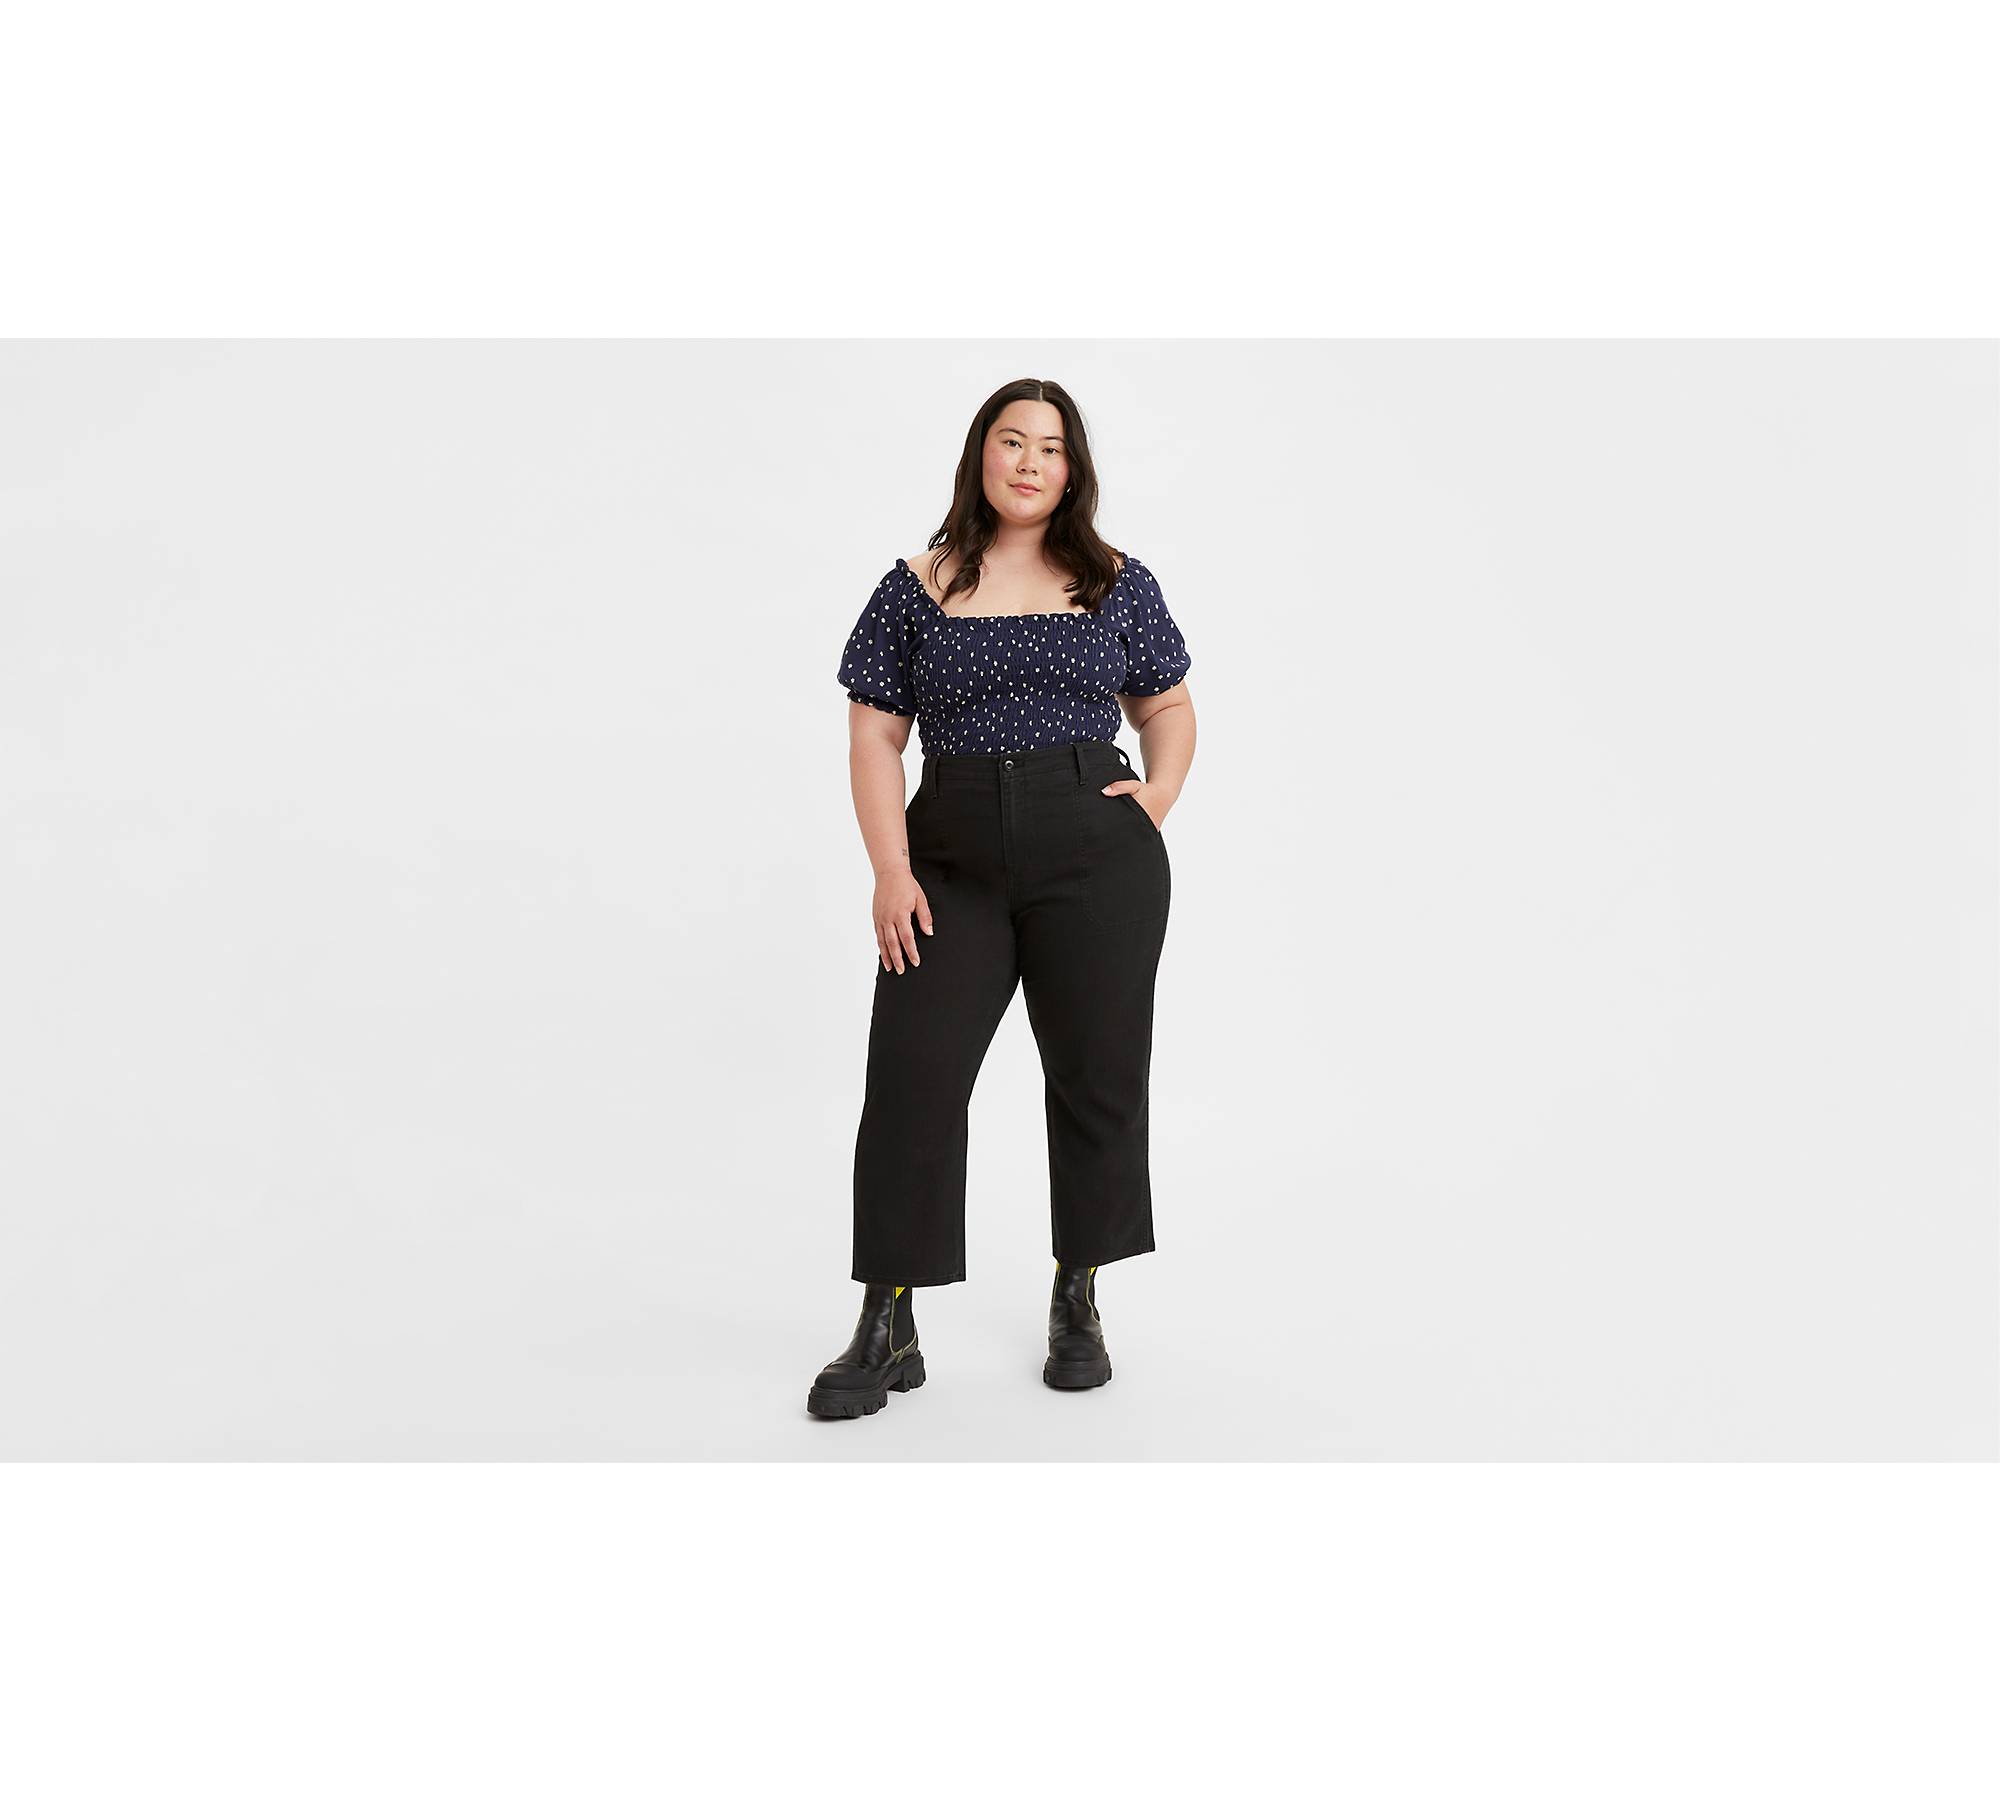  Women's Pants - 4X / Plus Size / Women's Pants